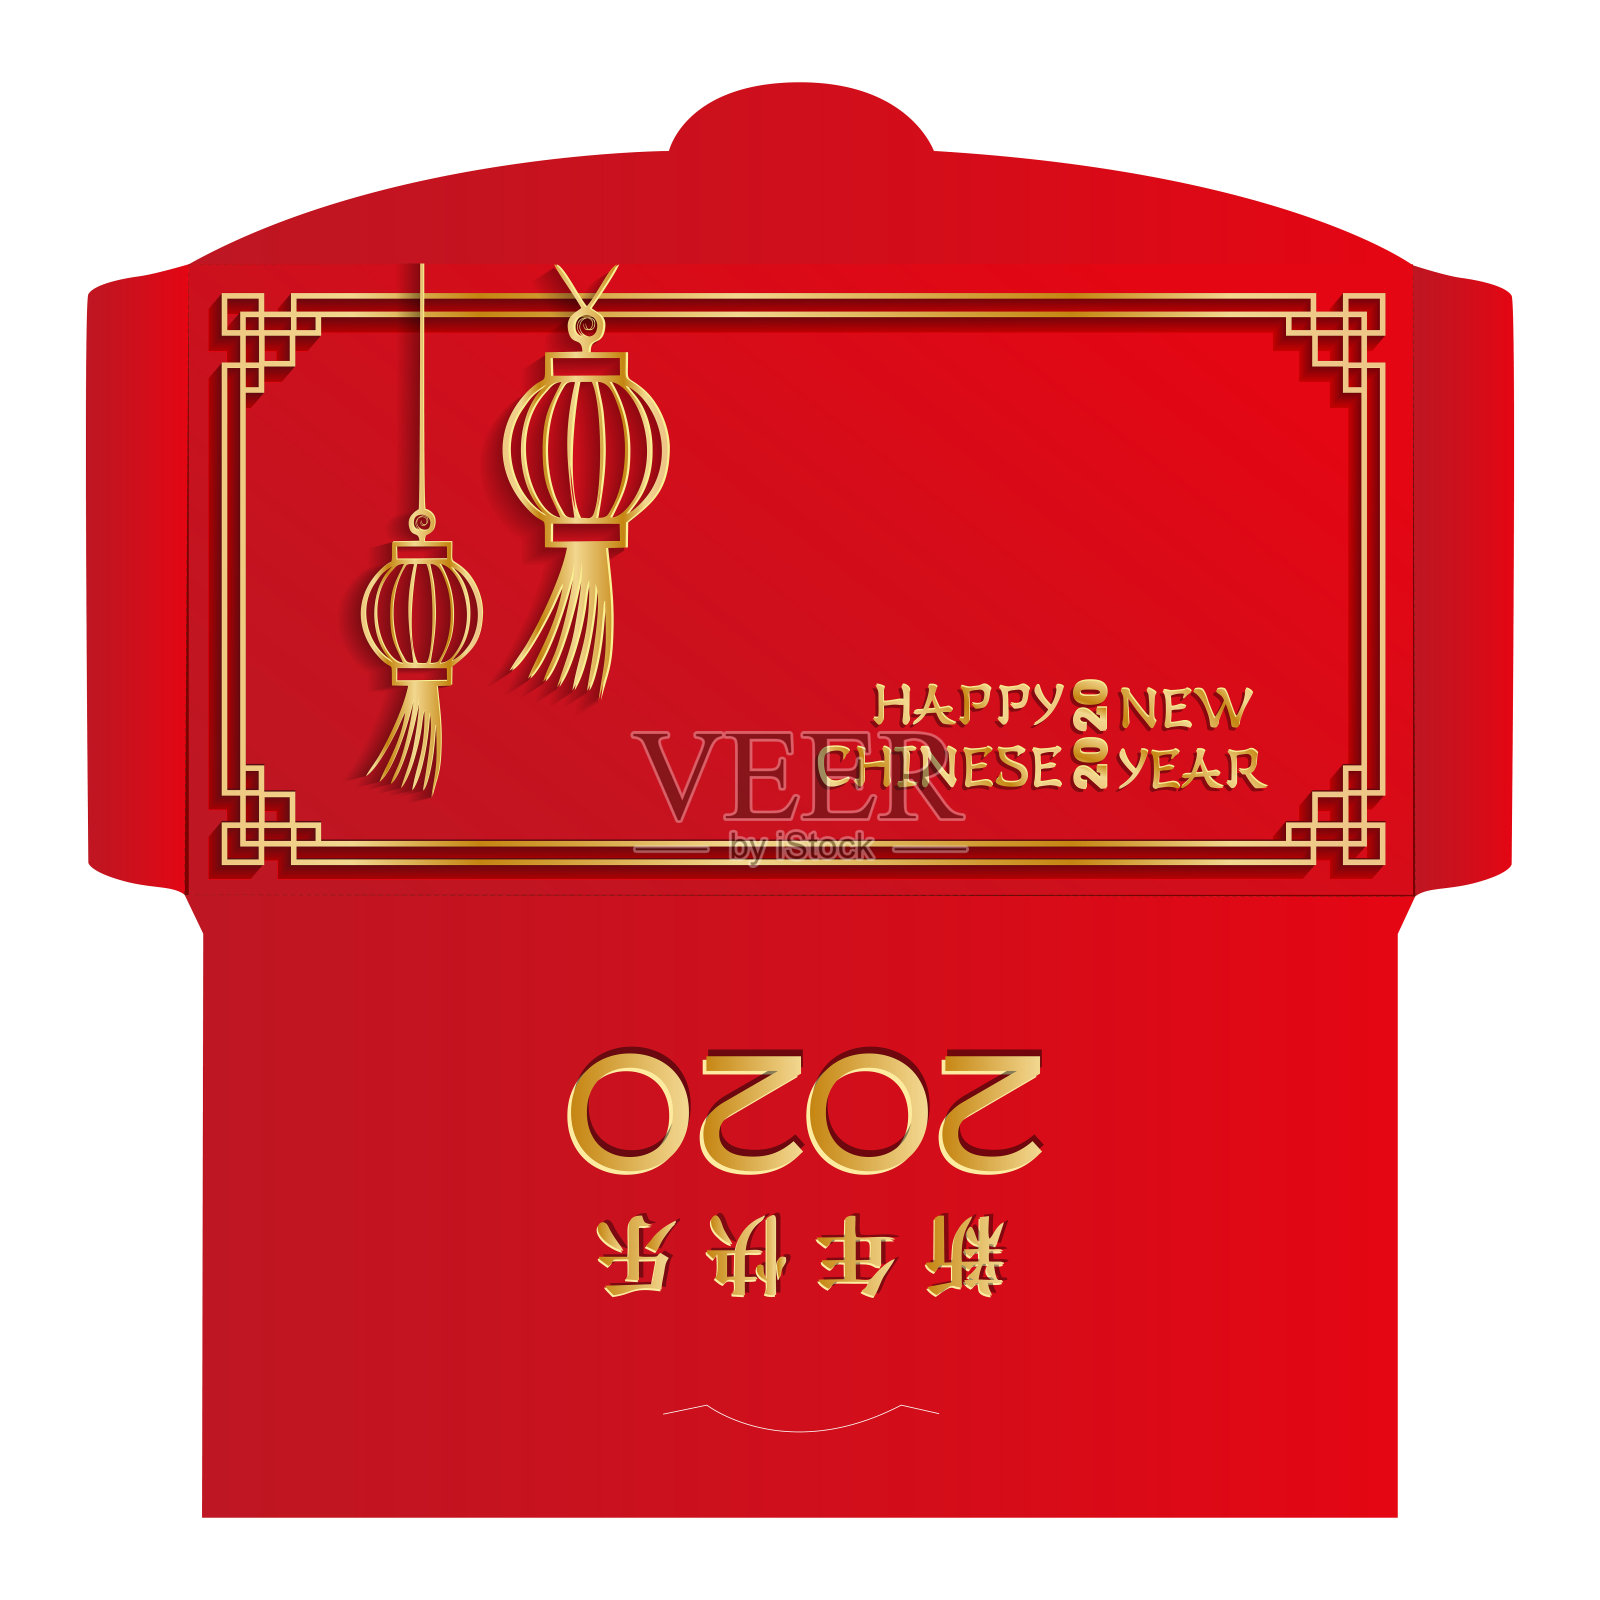 中国新年红包的设计。剪纸风格的金色灯笼与阴影。汉字象形文字翻译-新年快乐2020。准备打印，模切在单独的层插画图片素材